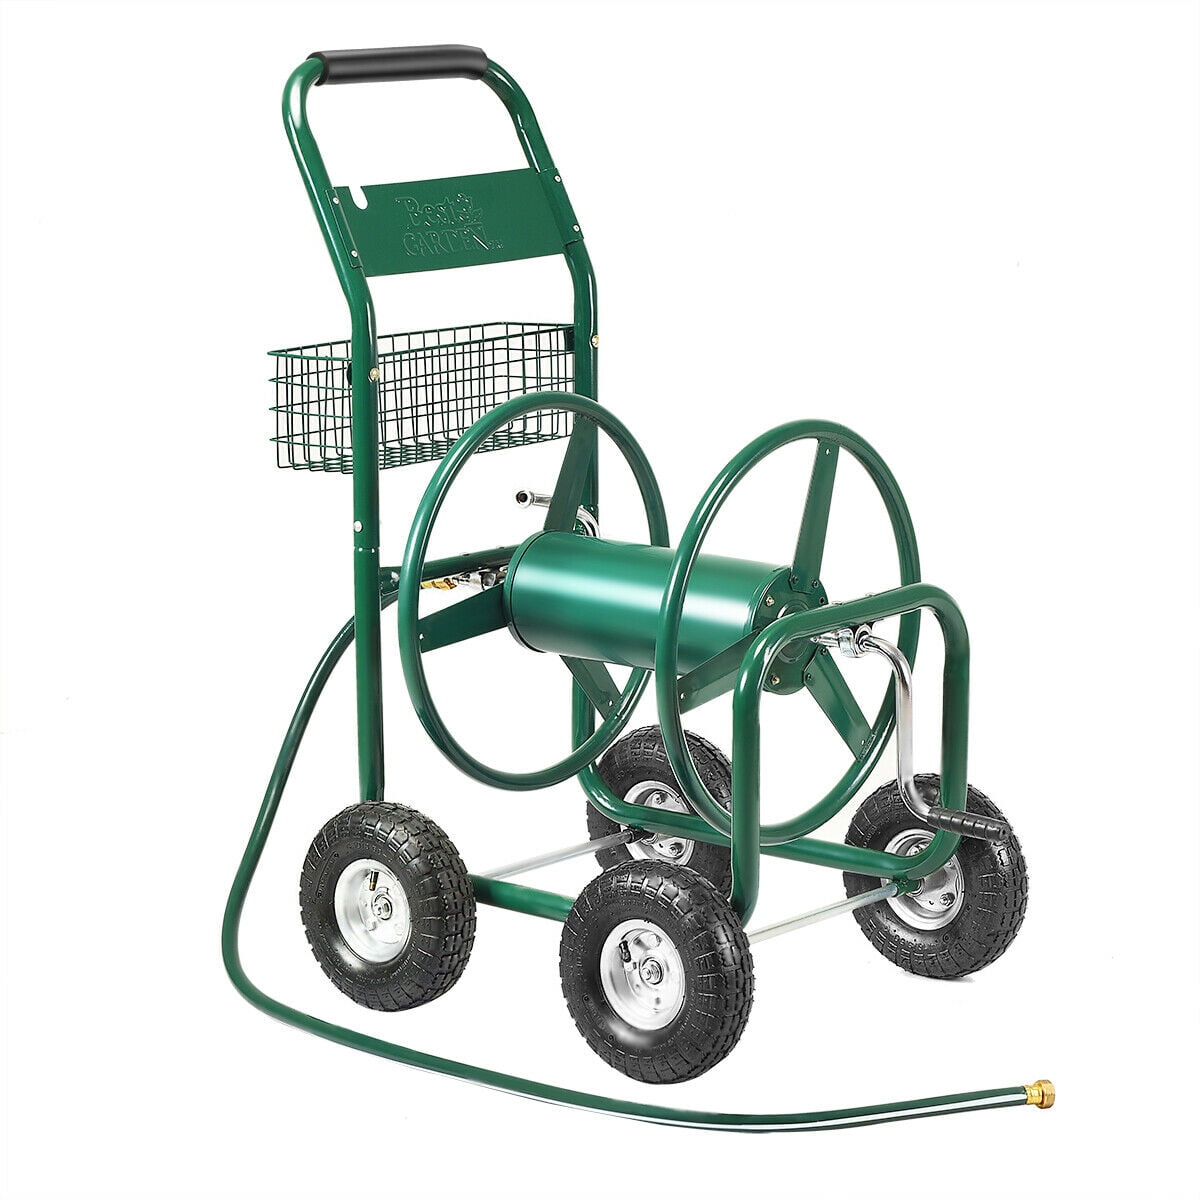 Portable Garden Hose Reel Holder Outdoor Gardening Water Planting Cart Hol E9E7